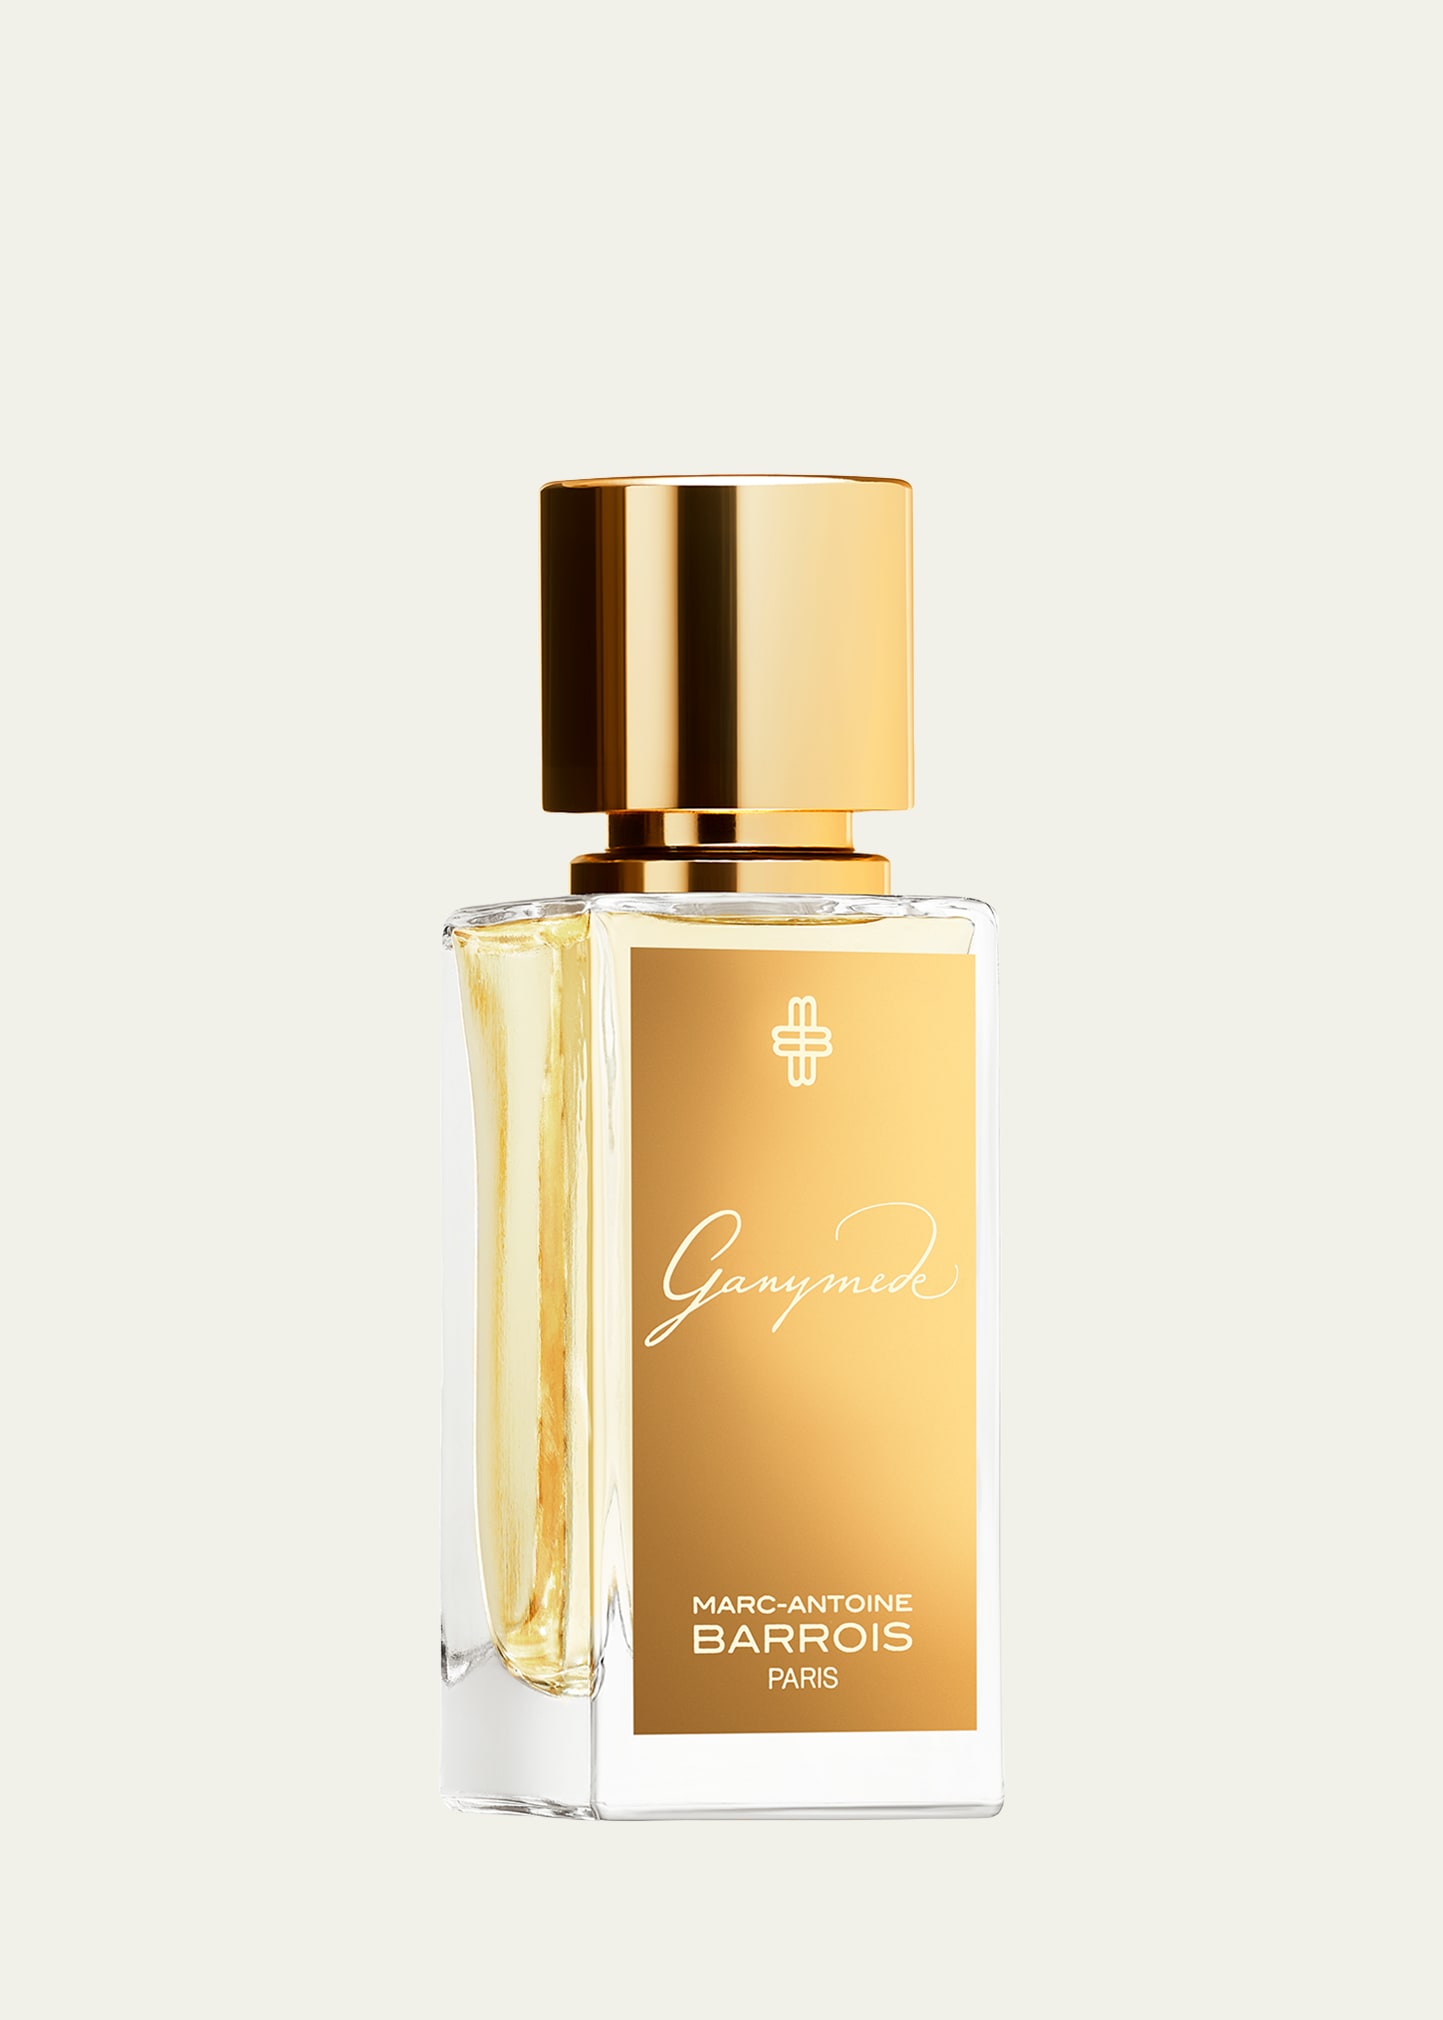 Marc-antoine Barrois Ganymede Eau De Parfum, 1 Oz.